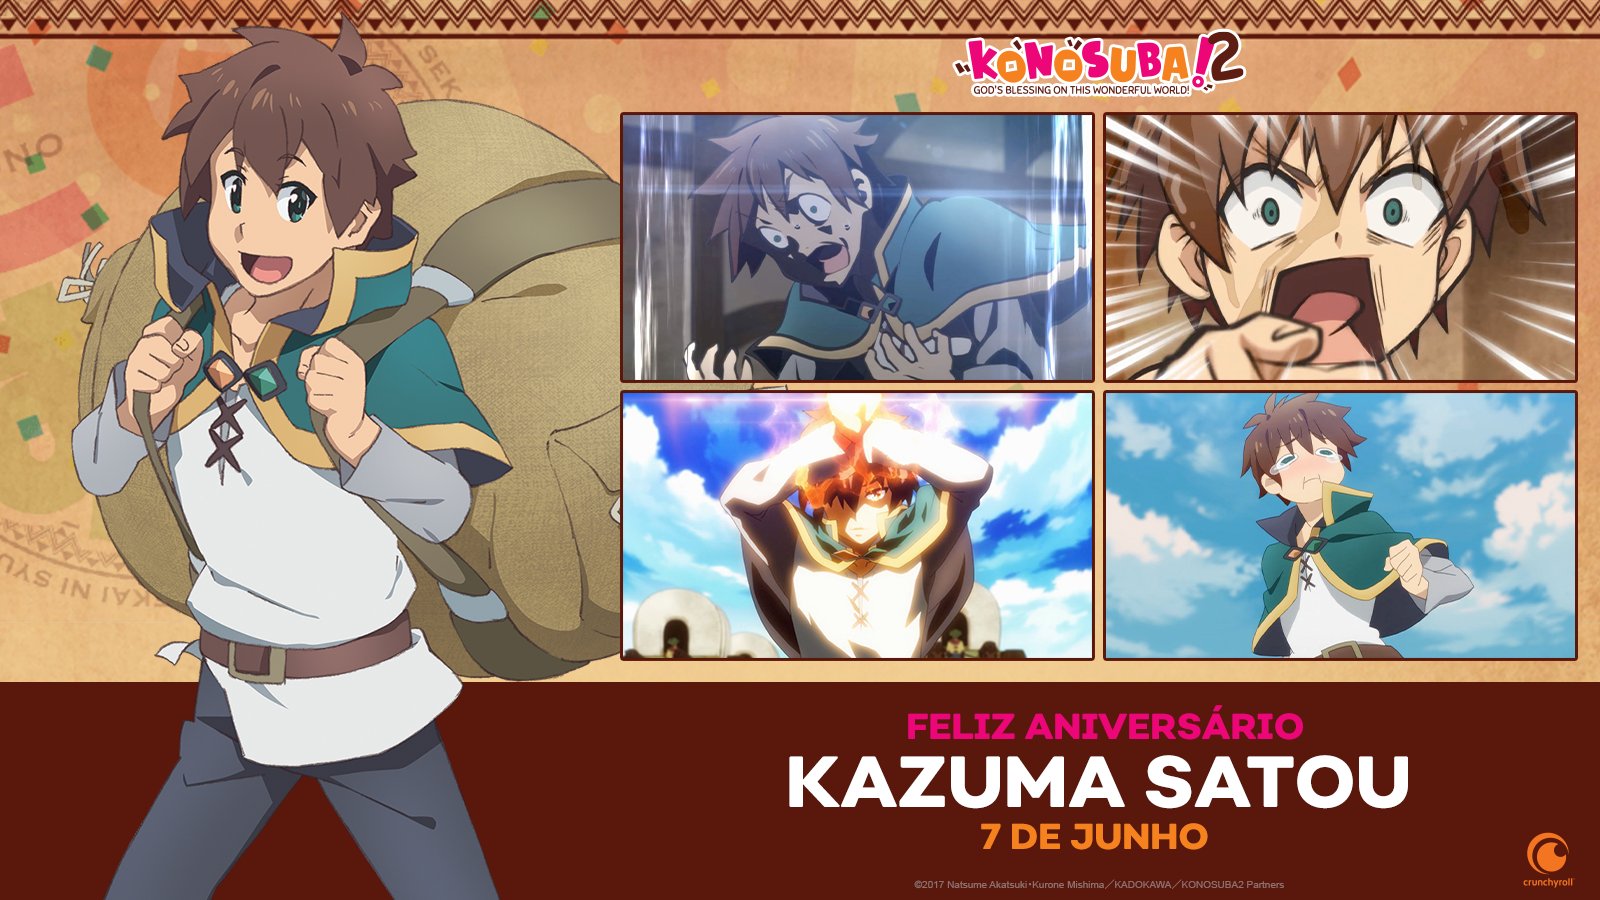 Crunchyroll.pt - (07/06) Feliz aniversário, Kazuma! 🎉🎉🎉 ⠀⠀⠀⠀⠀⠀⠀⠀⠀ ~✨  Anime: Konosuba